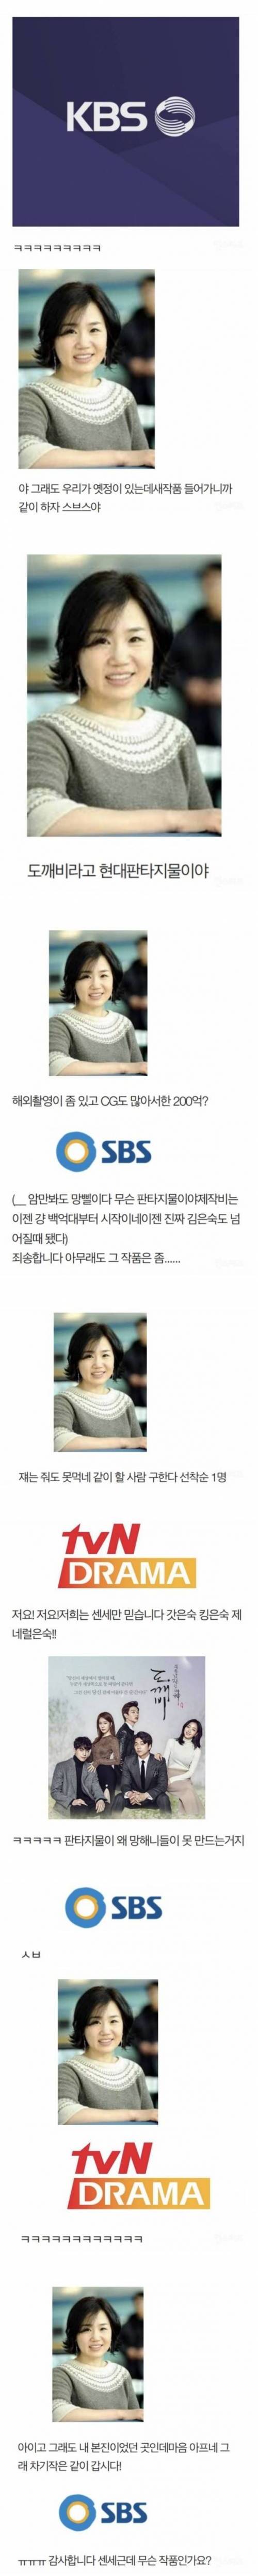 [스압] 김은숙과 SBS의 케미.jpg